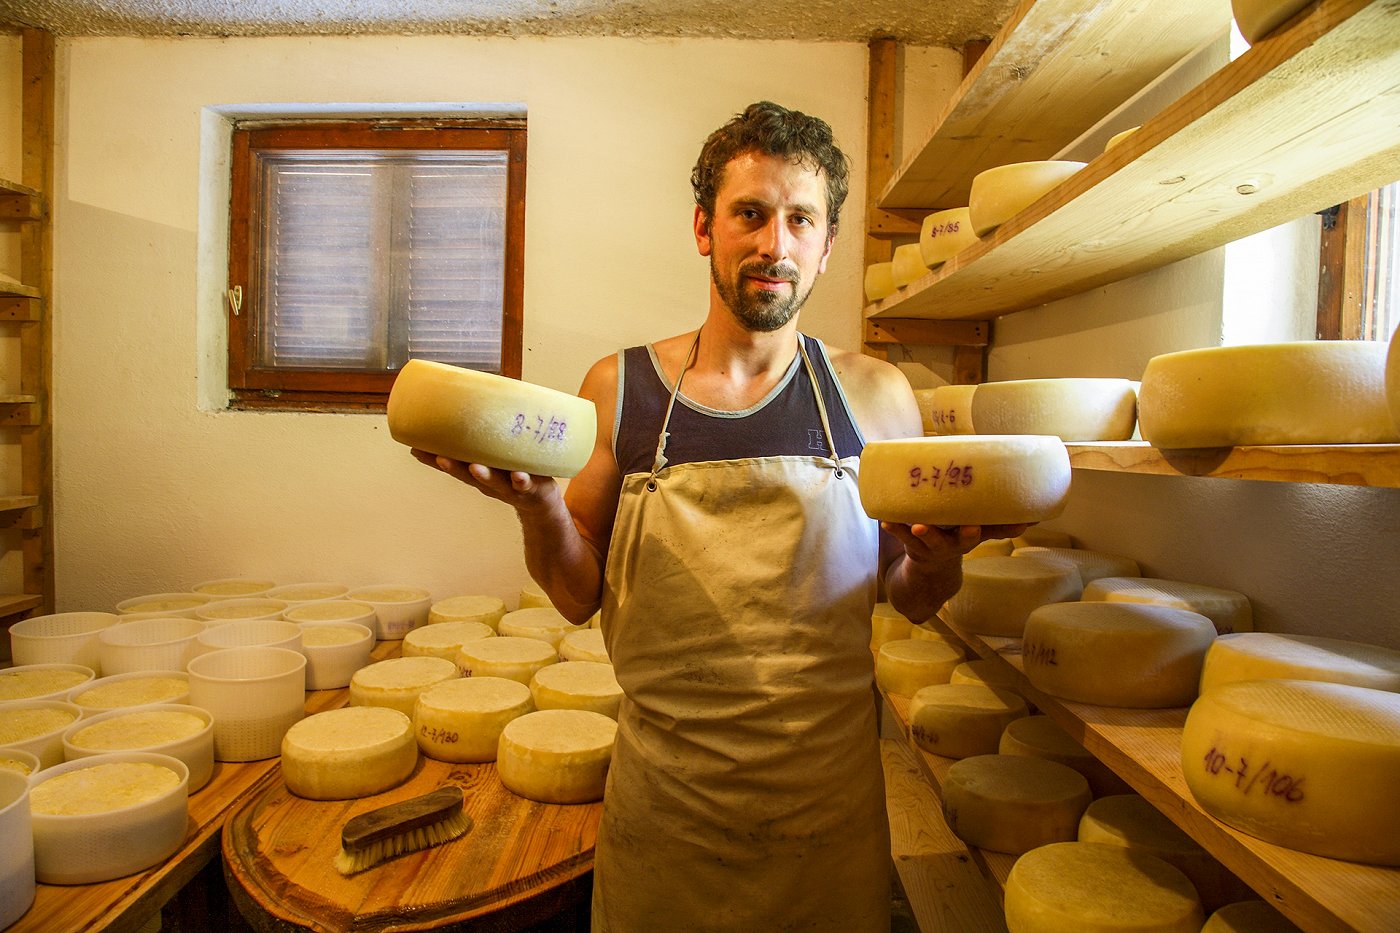 Kmet drži v roki dve kolesi sira v svoji sirarni polni sira